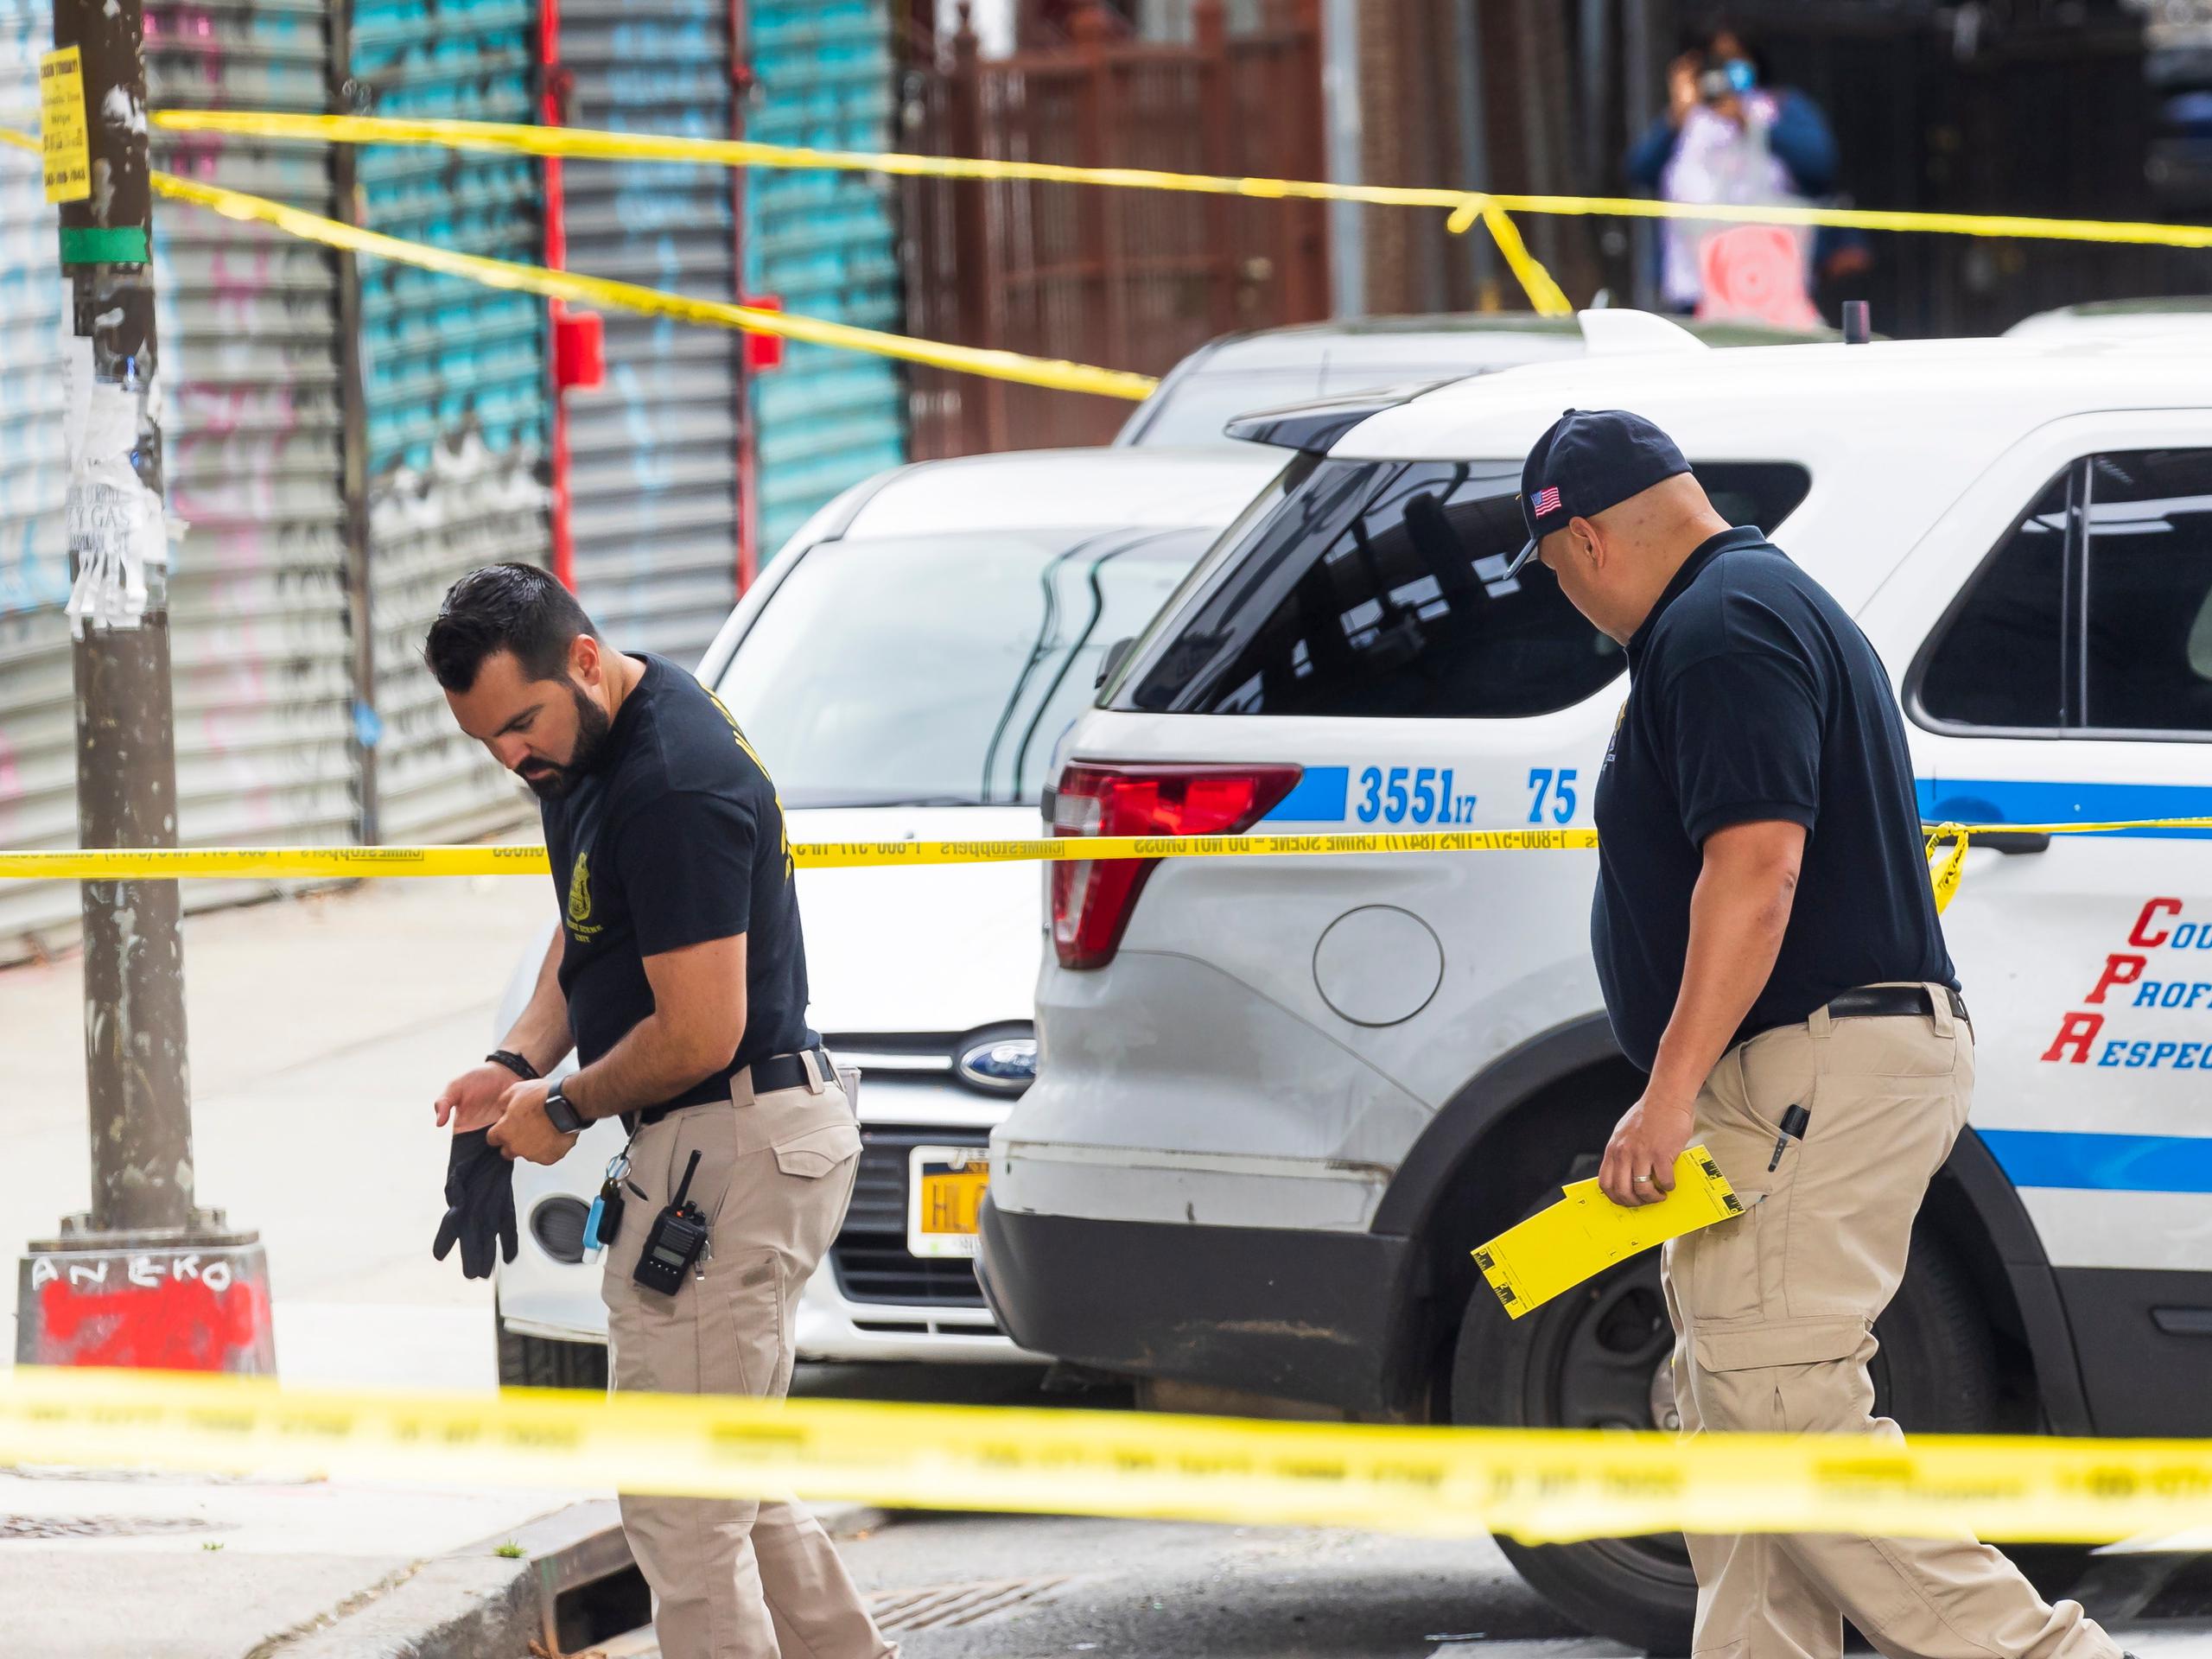 Según fuentes policiales citadas por el New York Post, de los 8 heridos, 3 fueron por balas perdidas cundo dos grupos comenzaron a dispararse entre sí después de una disputa en el Alto Manhattan.